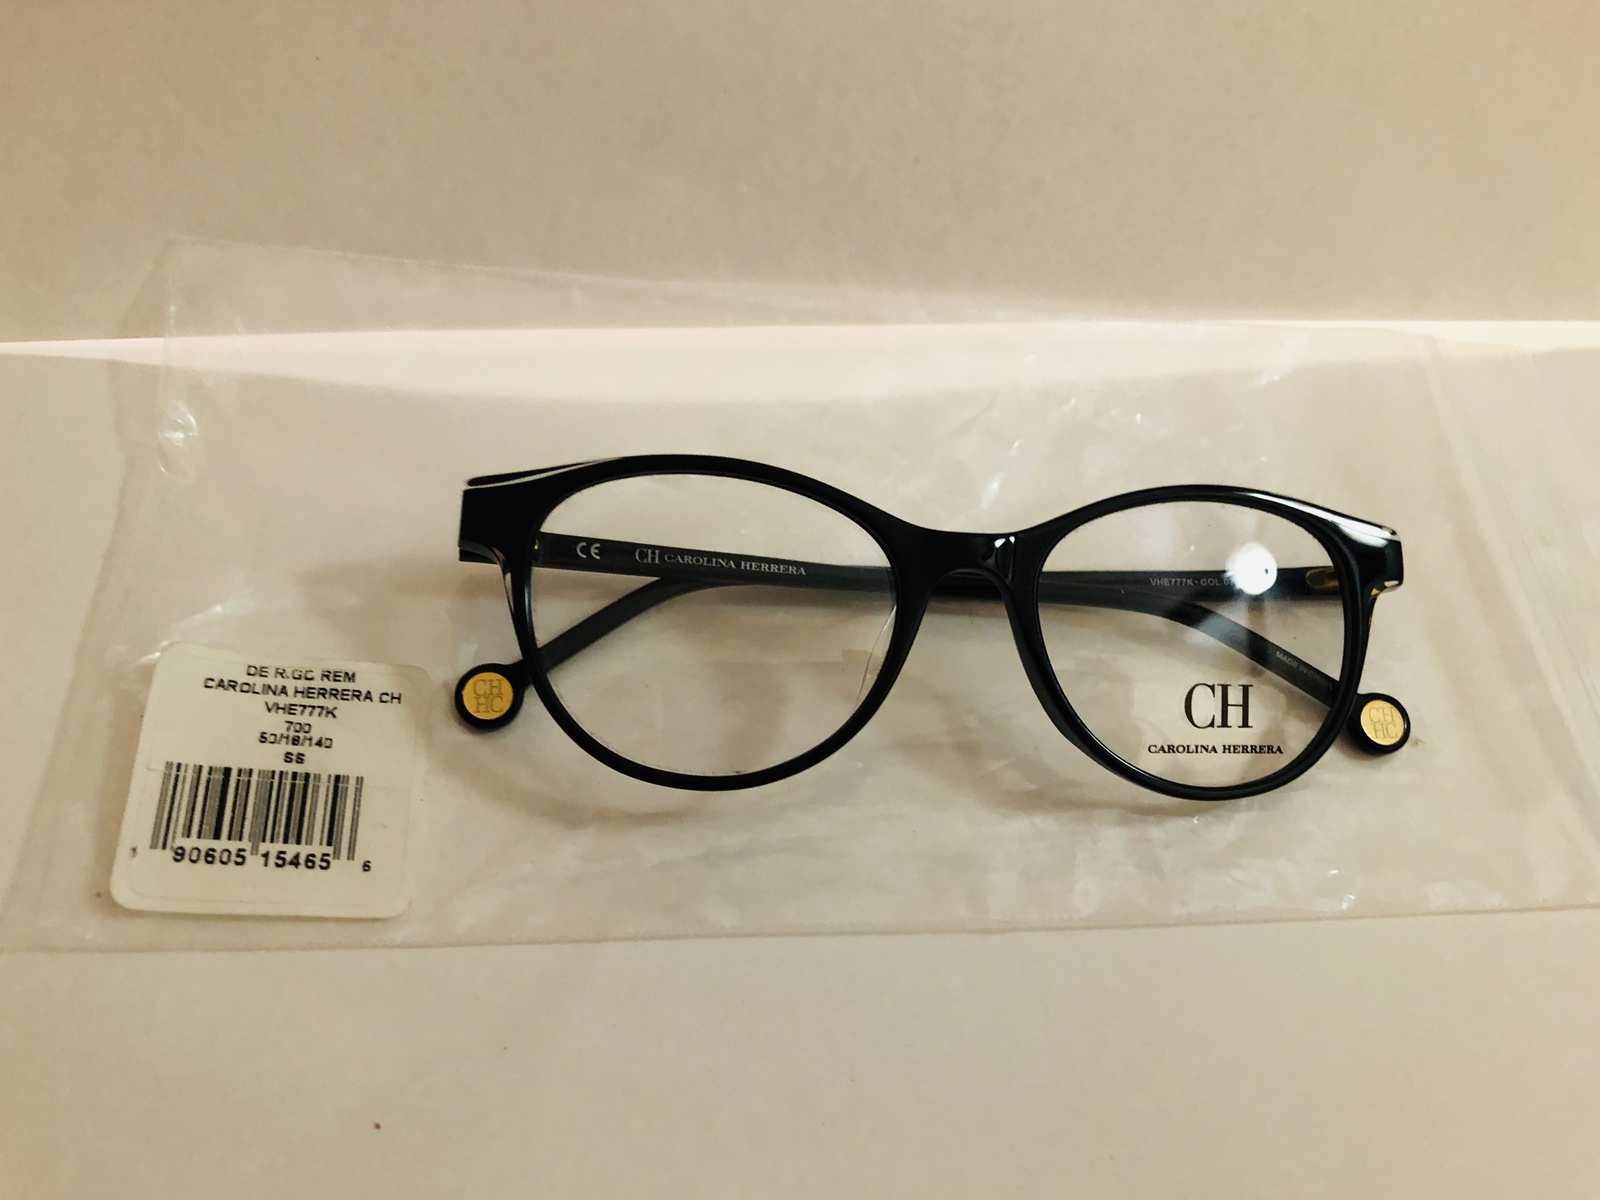 Carolina Herrera VHE77K 700 Eyeglasses Eyeglass Frames Black - $174.95